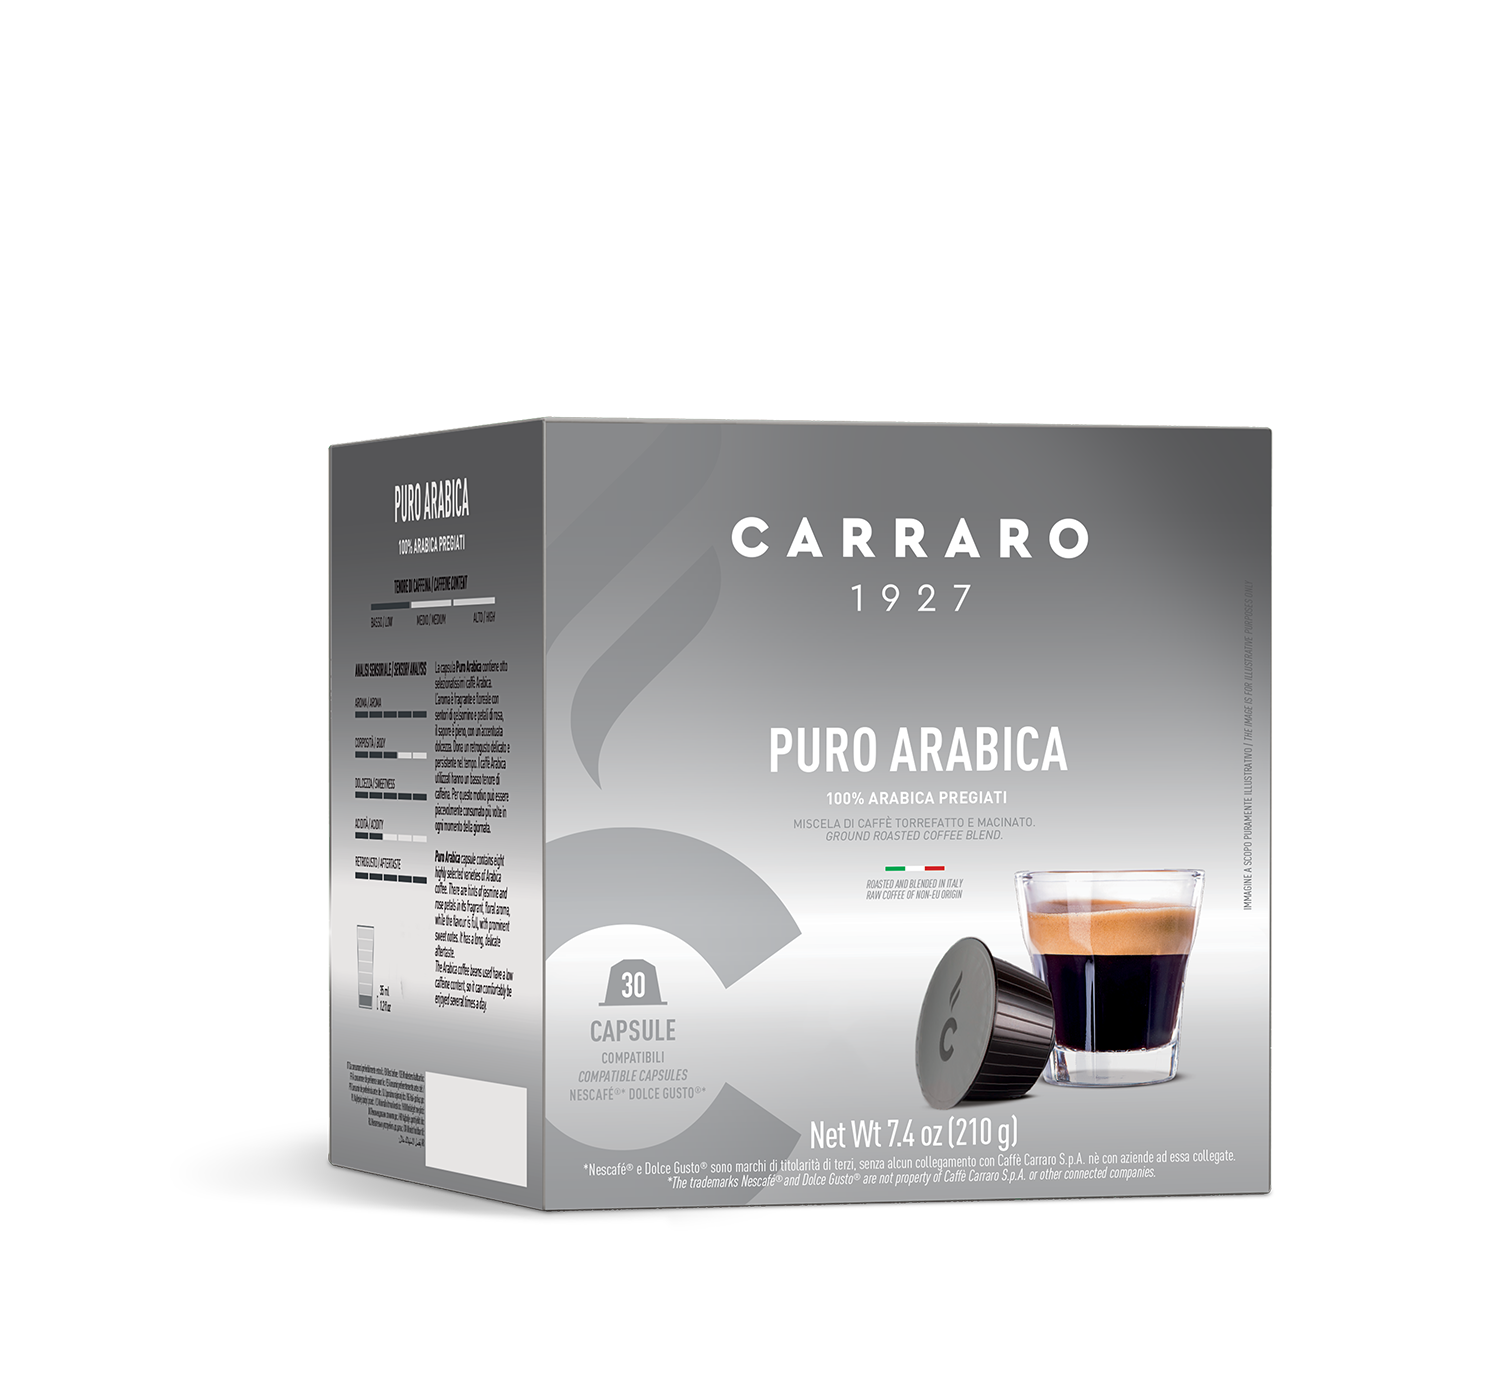 Capsule - Puro Arabica – 30 capsule compatibili Dolce Gusto®* - Shop online Caffè Carraro